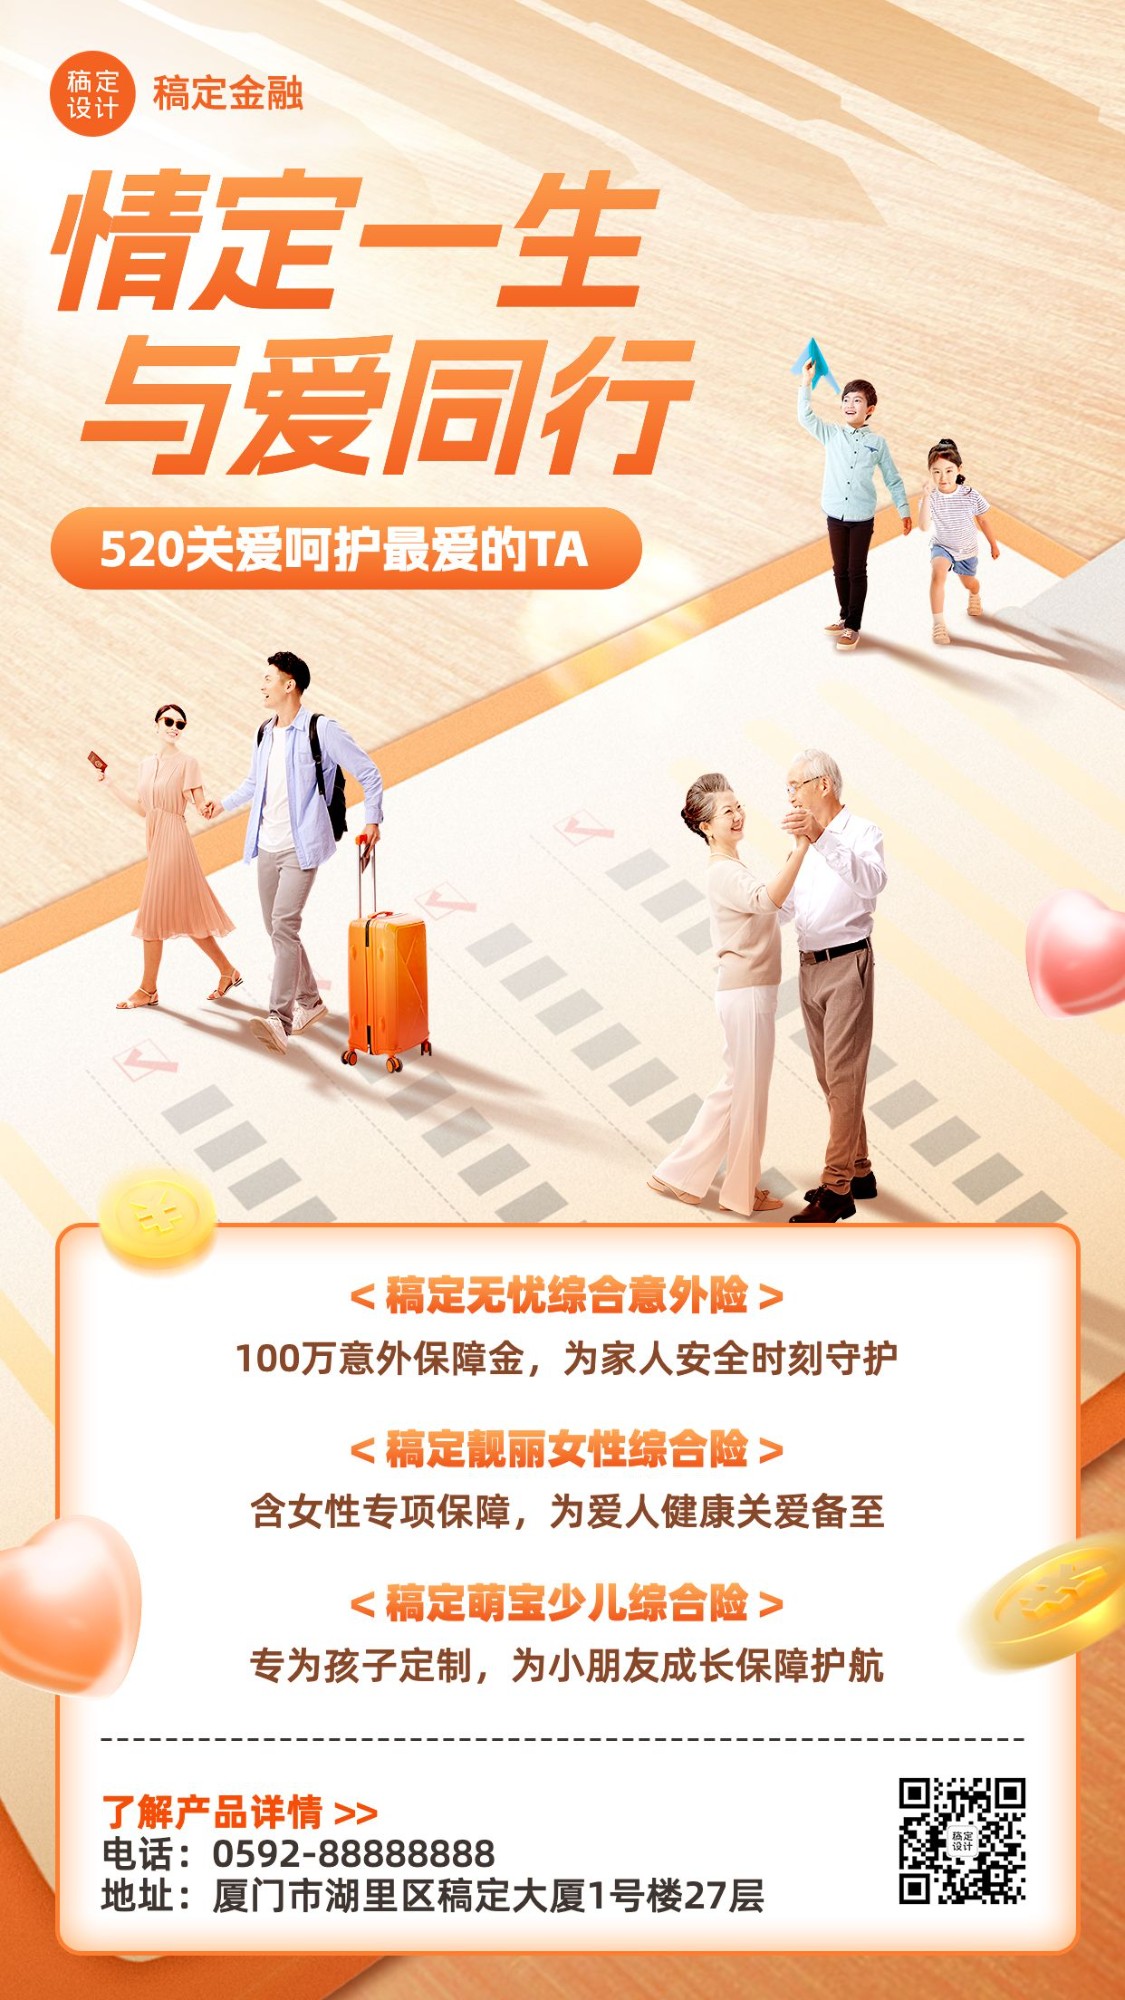 520情人节金融保险产品营销宣传手机海报套装预览效果